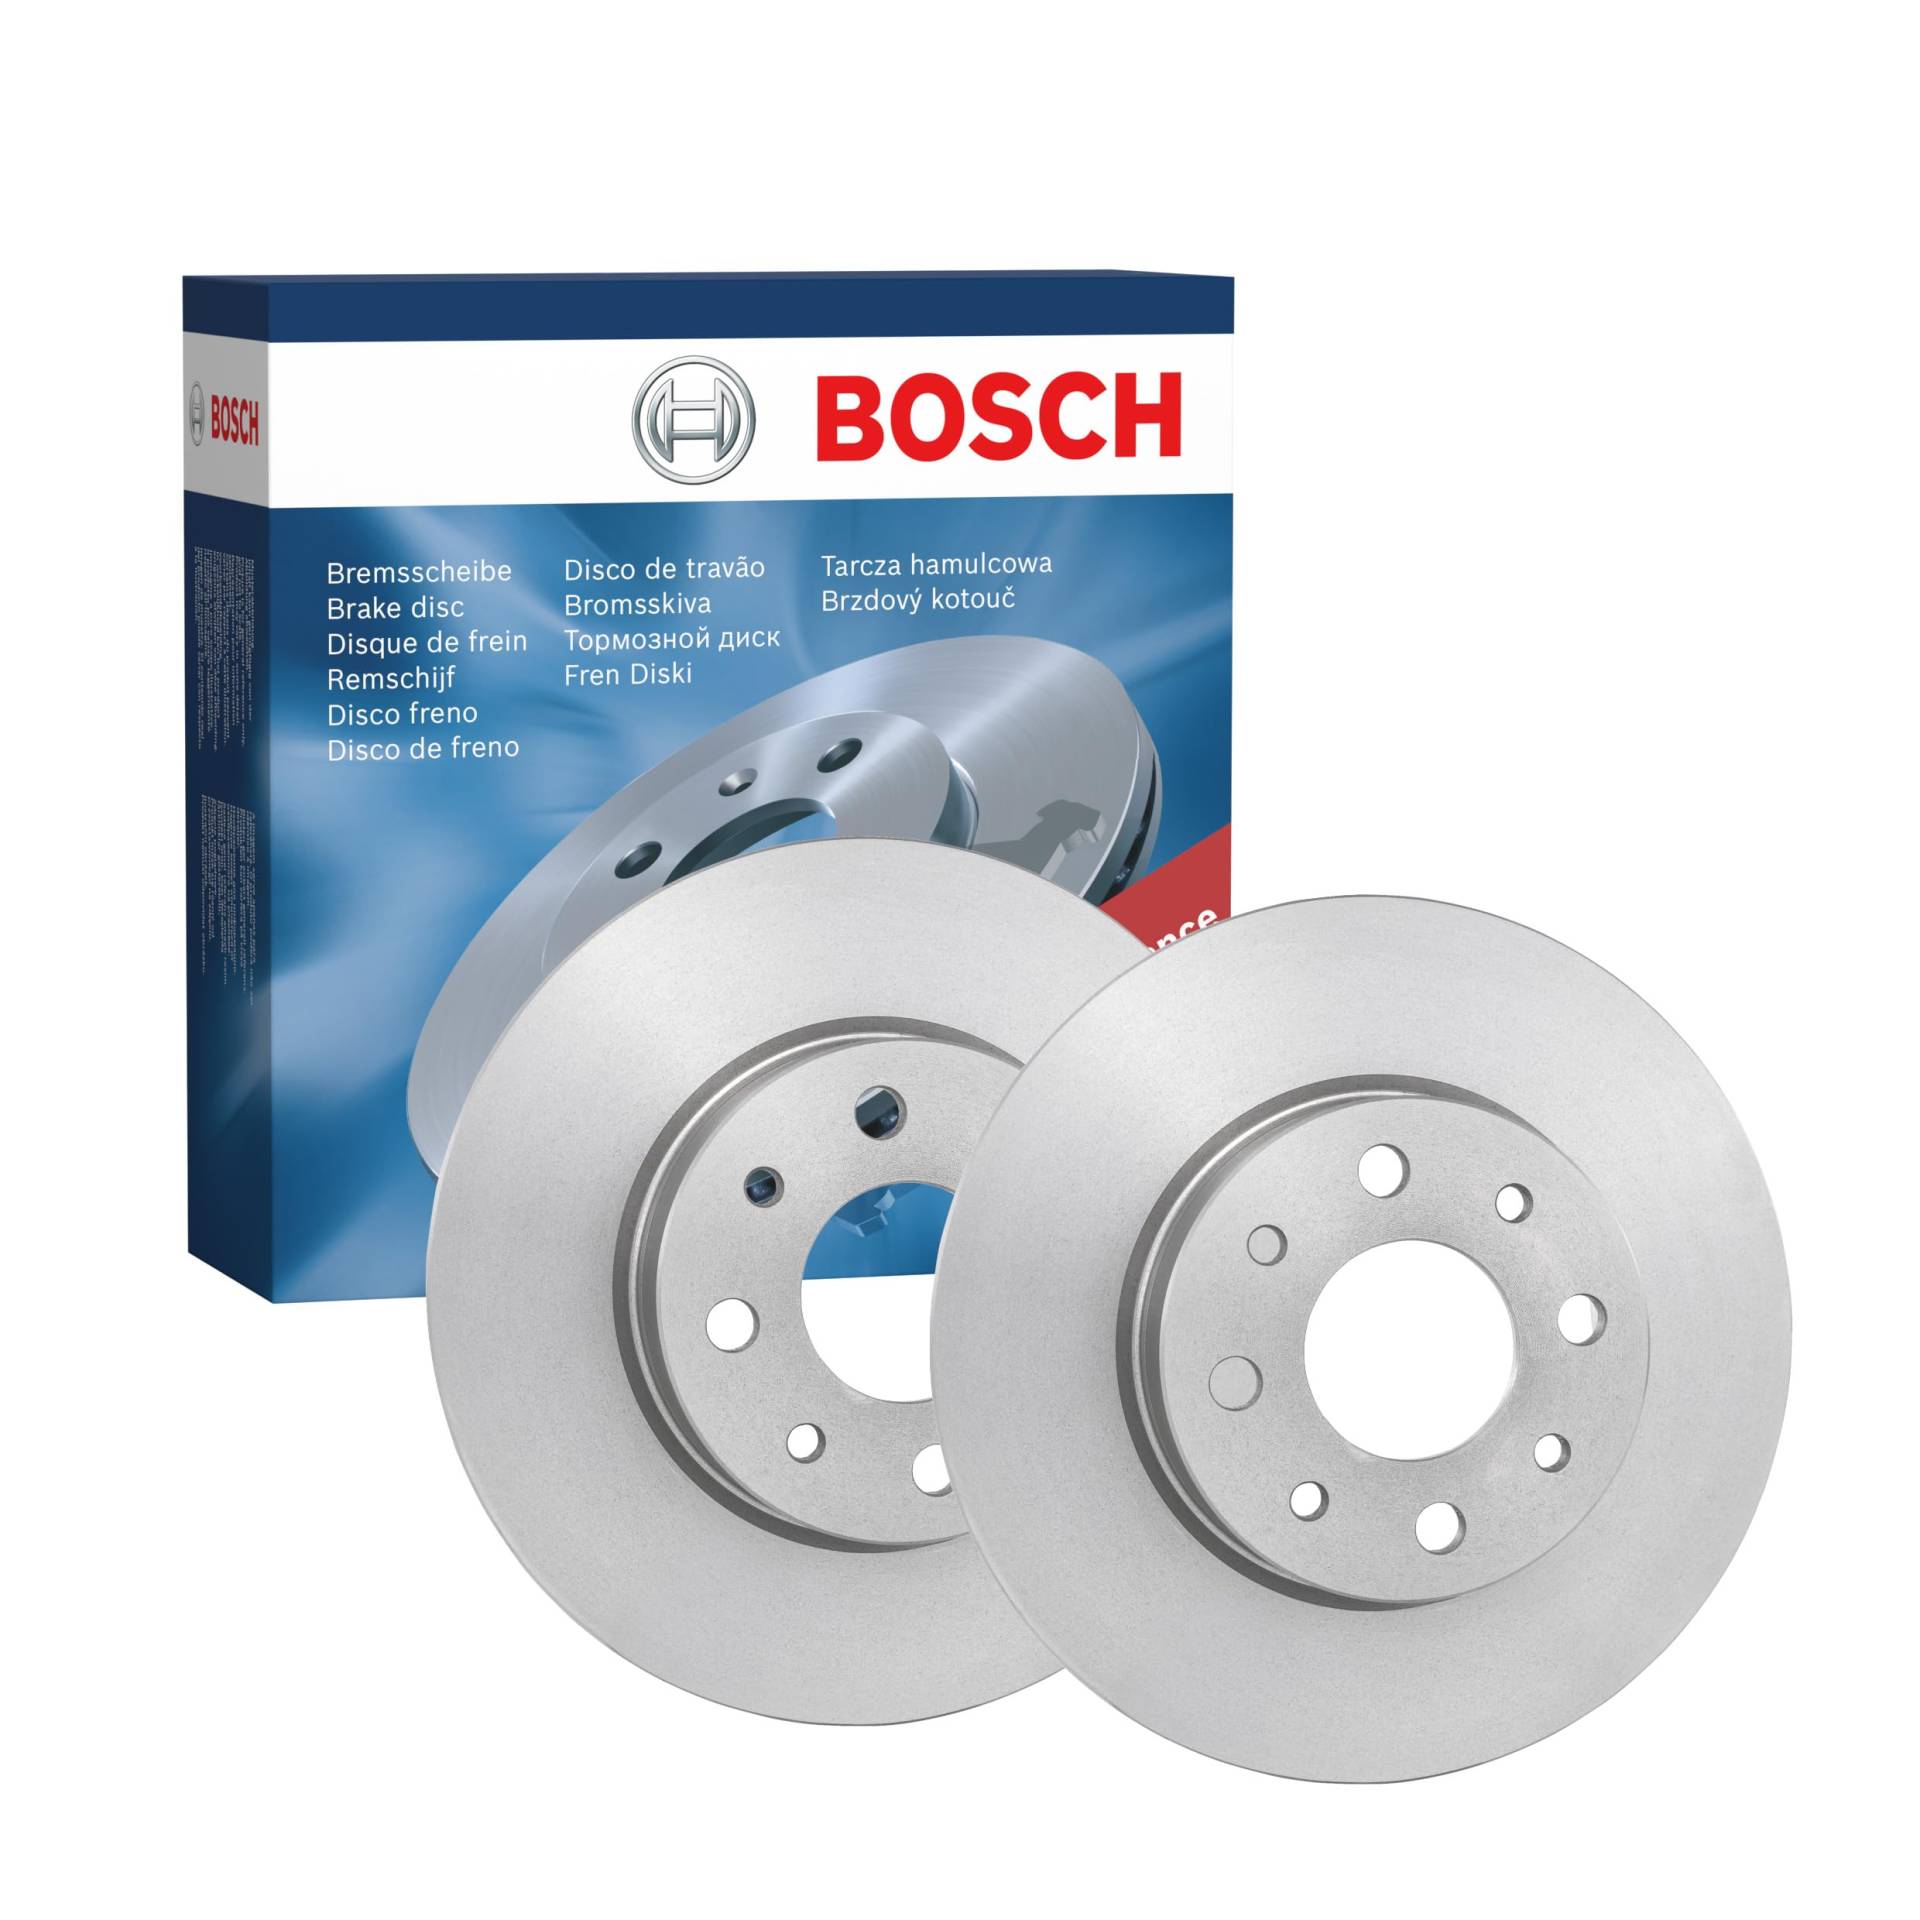 Bosch BD1359 Bremsscheiben - Hinterachse - ECE-R90 Zertifizierung - zwei Bremsscheiben pro Set von Bosch Automotive